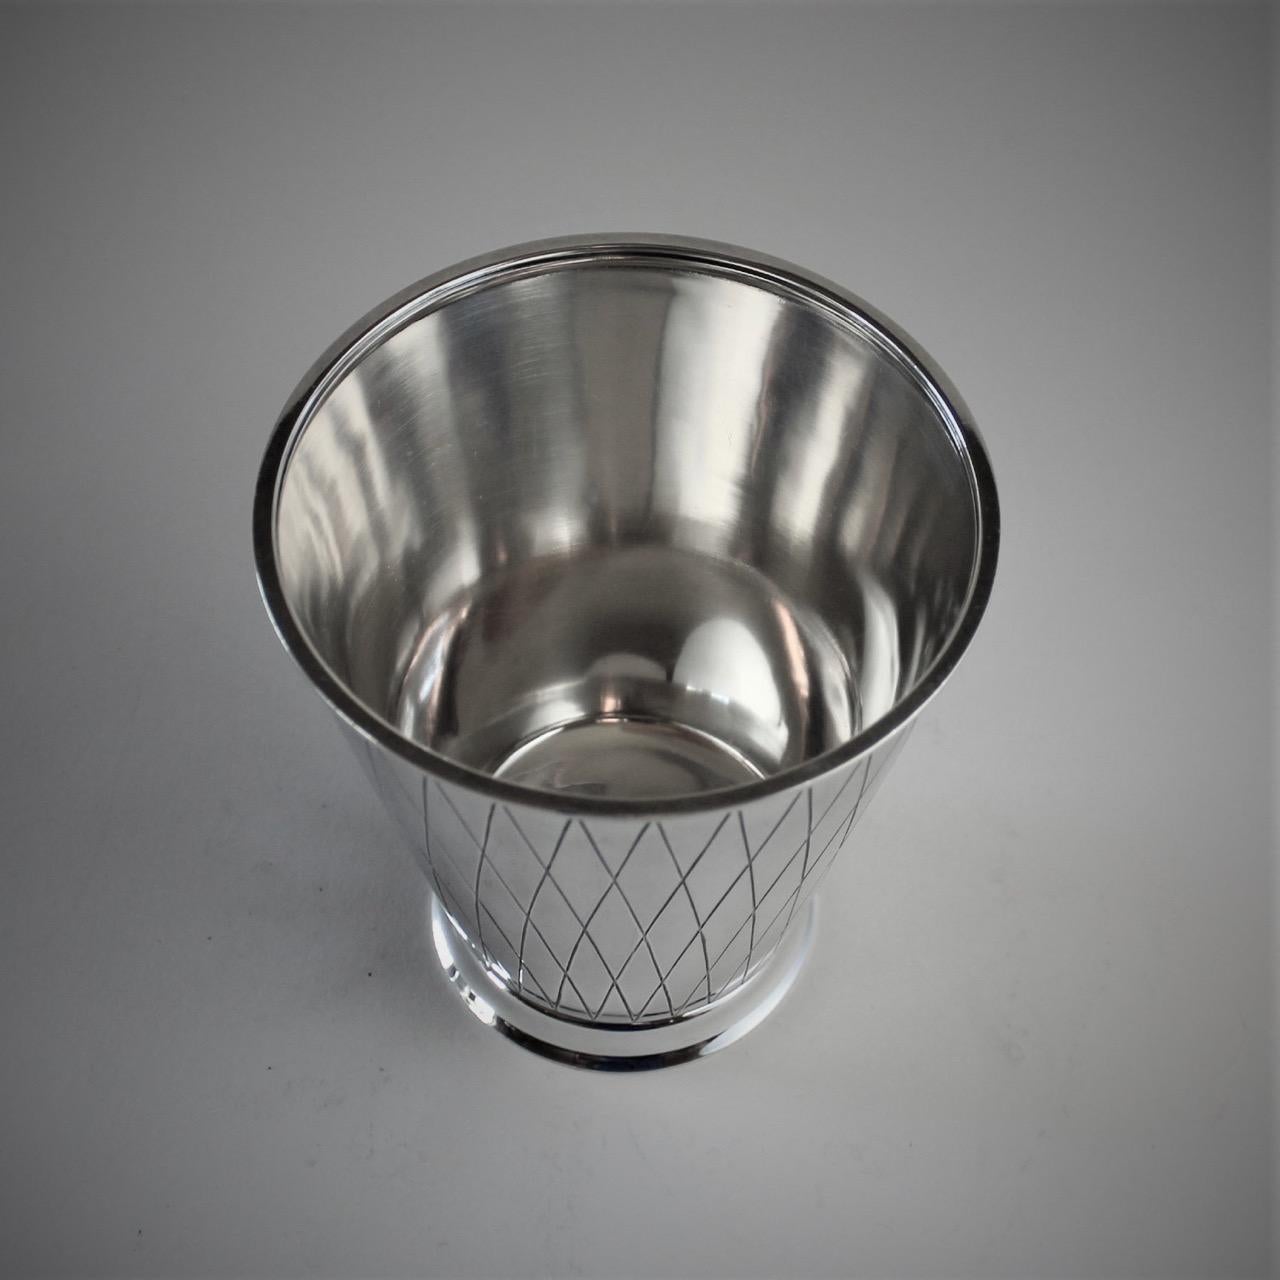 Art Deco Georg Jensen Sterling Silver Ice Bucket, No. 819 by Sigvard Bernadotte